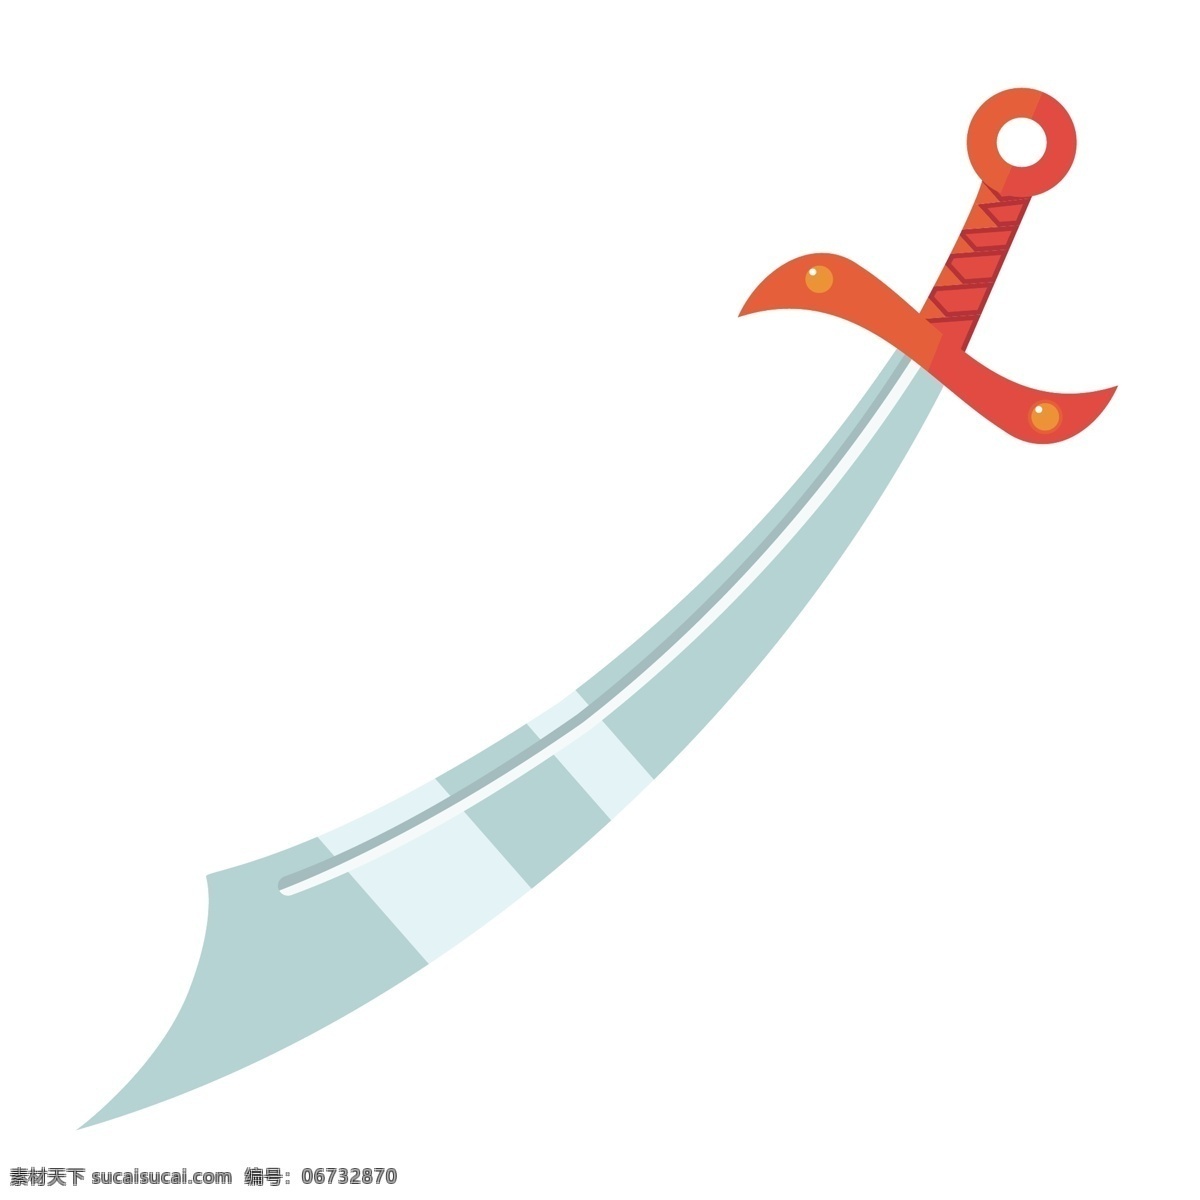 立体 宝剑 装饰 插画 立体宝剑 橙色的宝剑 漂亮的宝剑 创意宝剑 卡通宝剑 宝剑装饰 宝剑插画